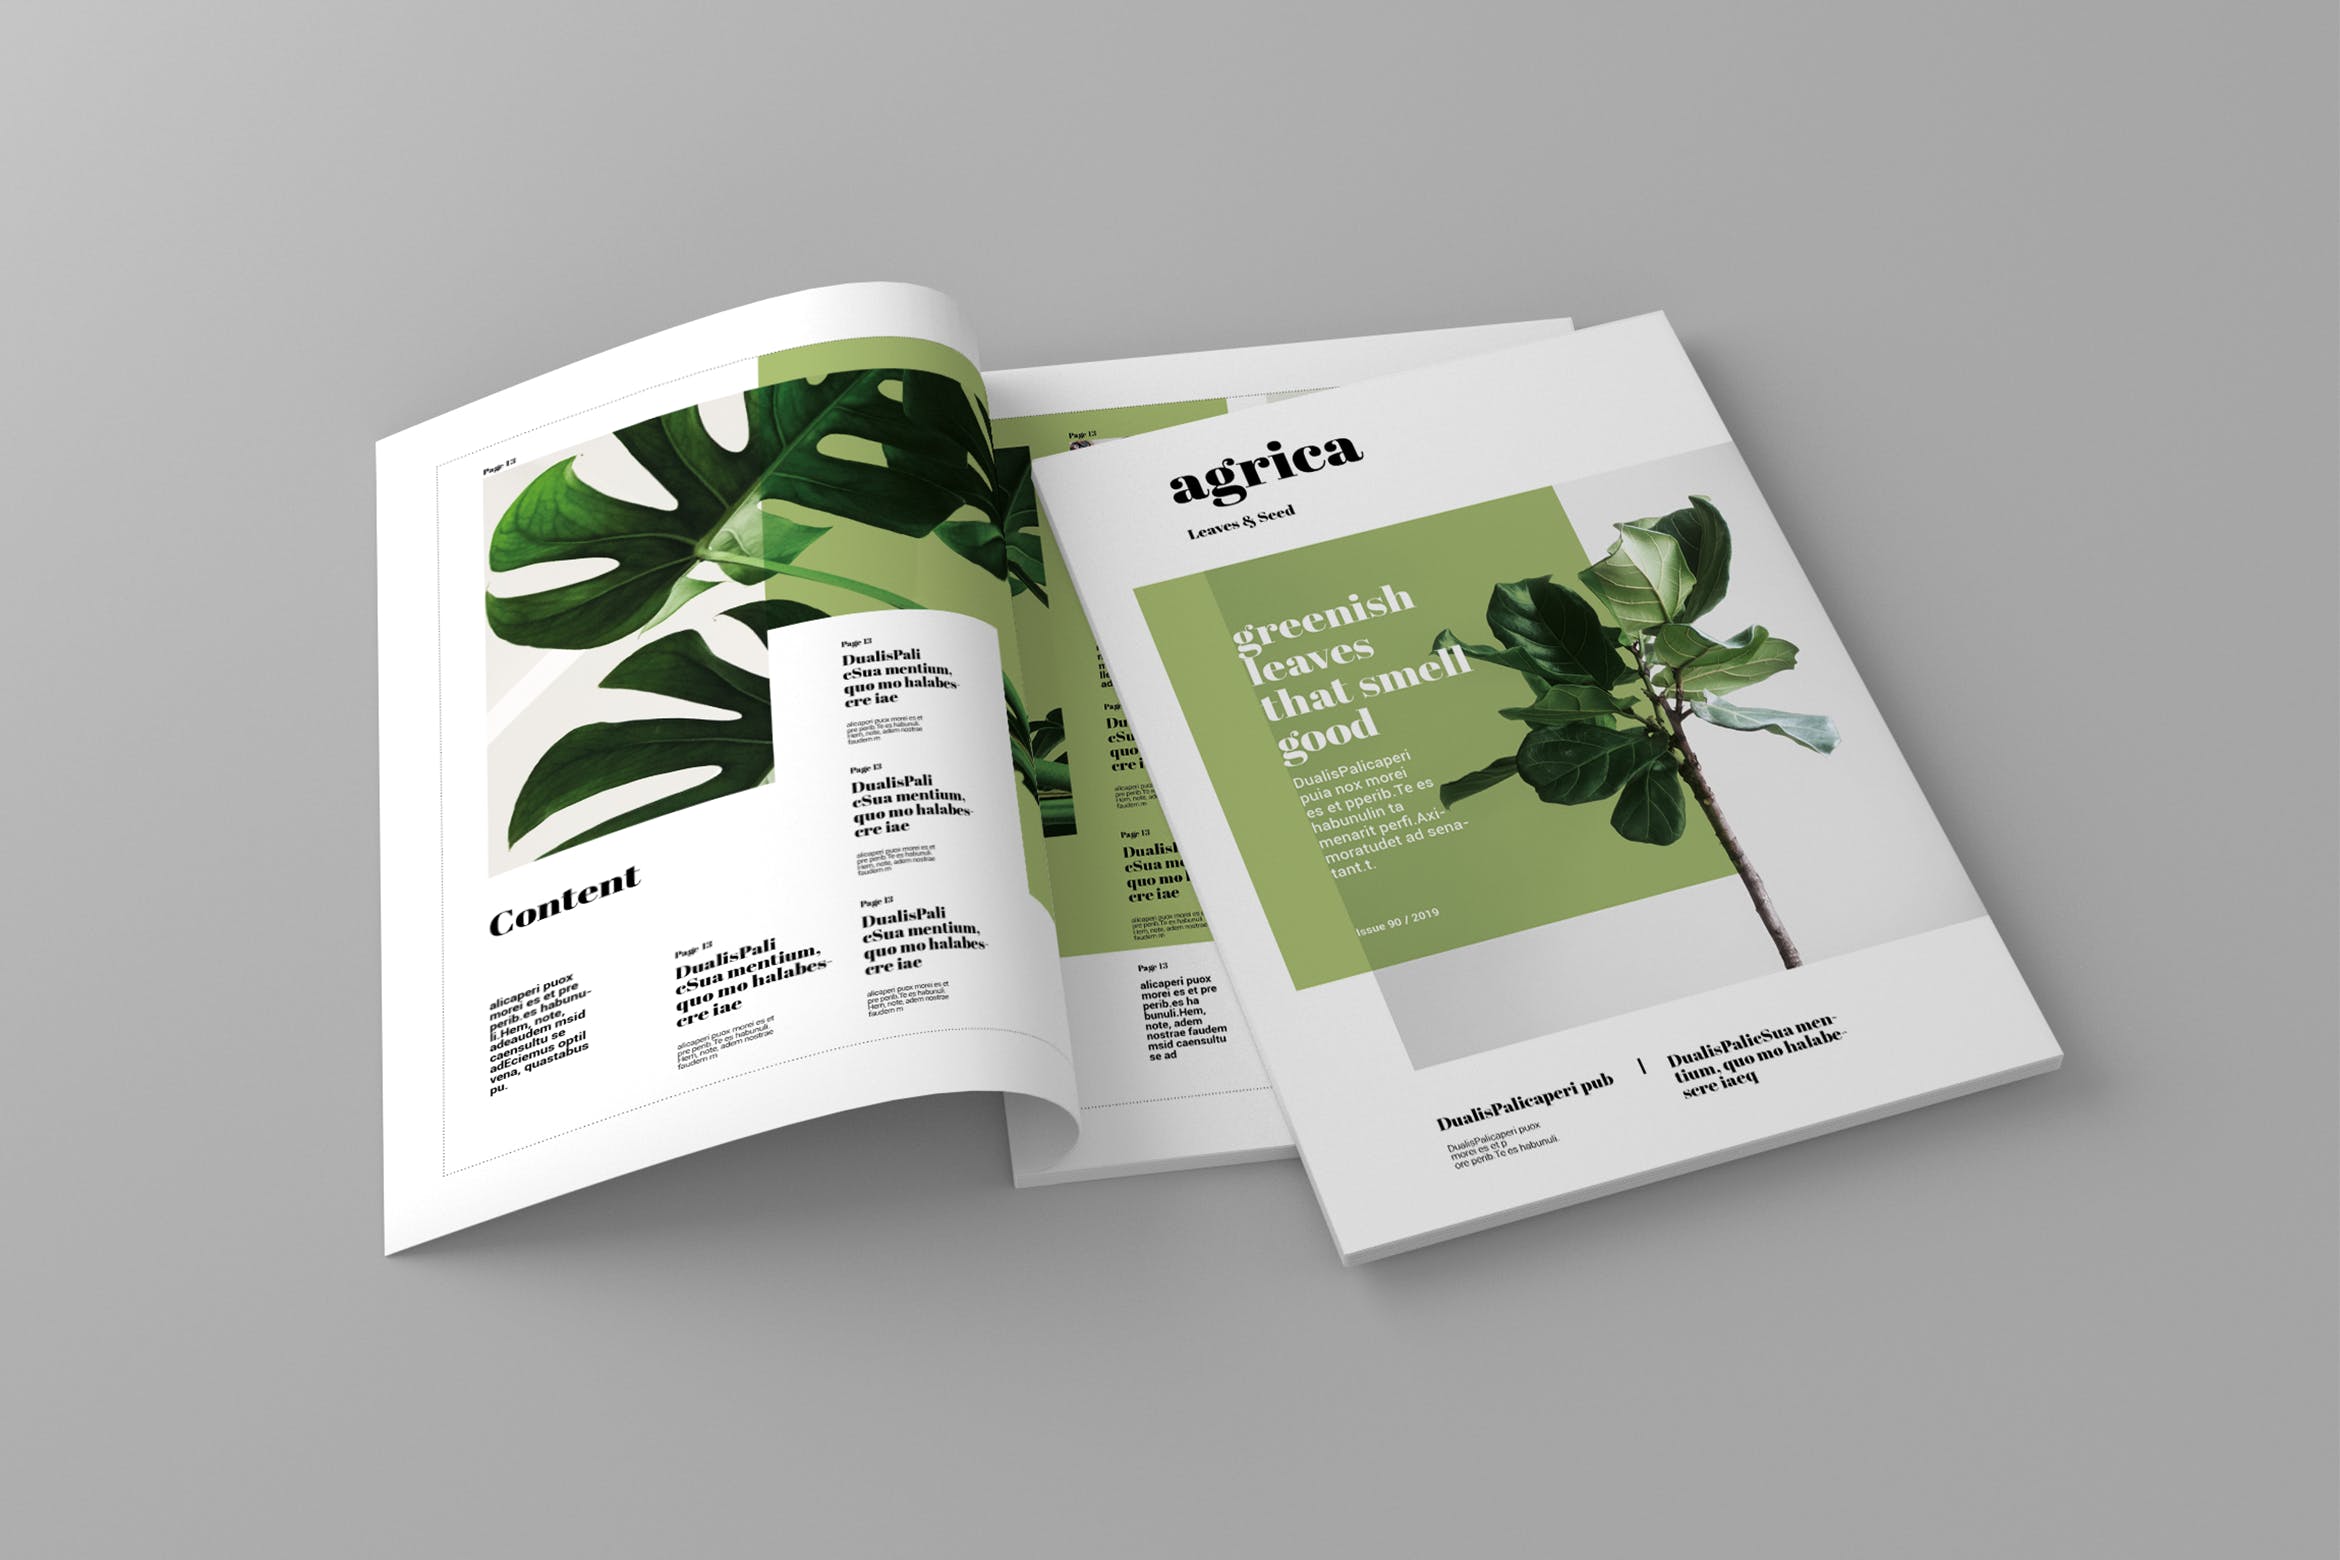 企业业务介绍第一素材精选杂志排版设计模板 Agrica – Magazine Template插图